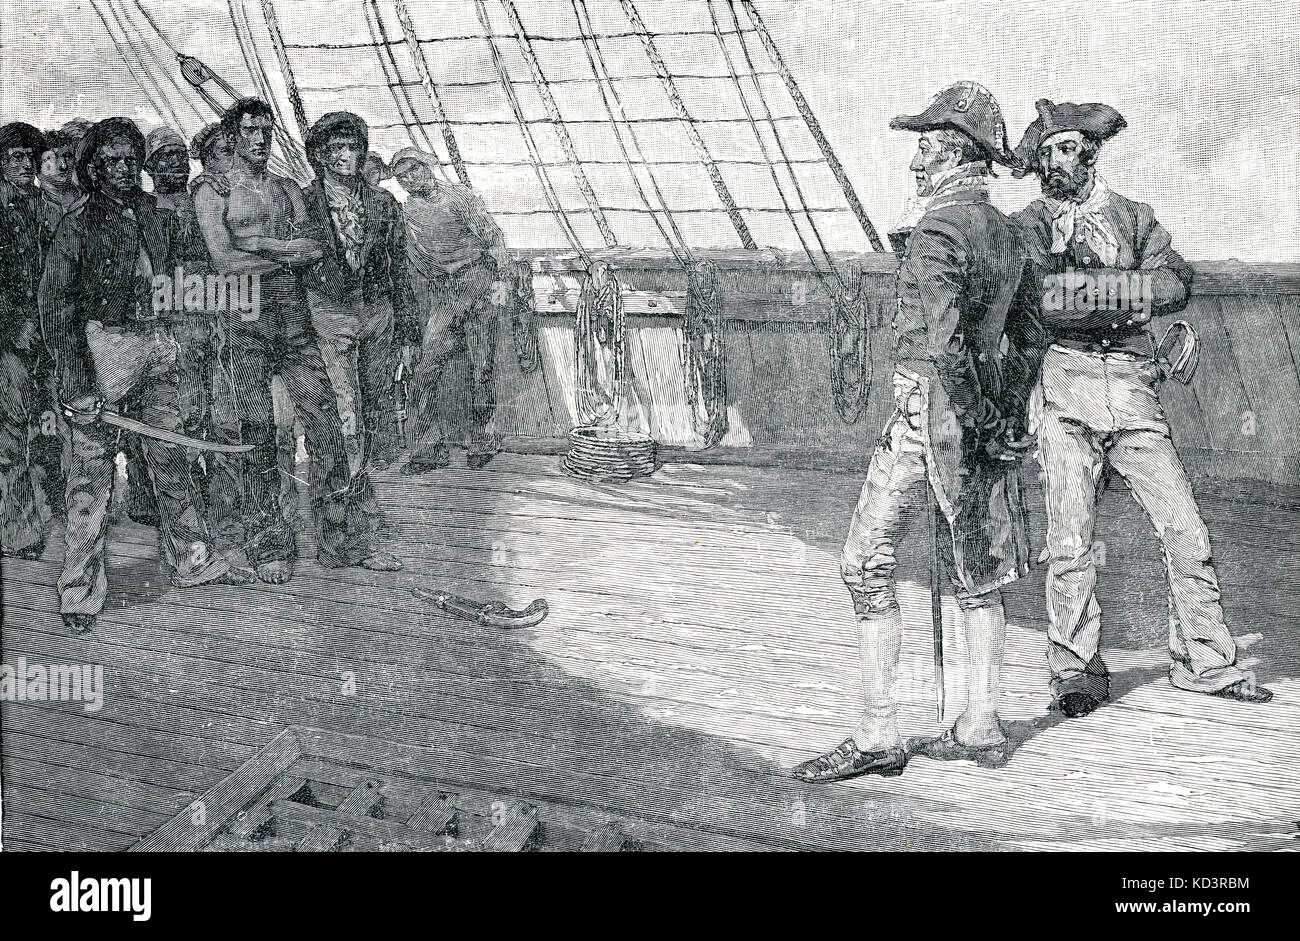 Impression de los marinos americanos, Segunda Guerra por la Independencia / Guerra de 1812. Ilustración de Howard Pyle, 1884 Foto de stock